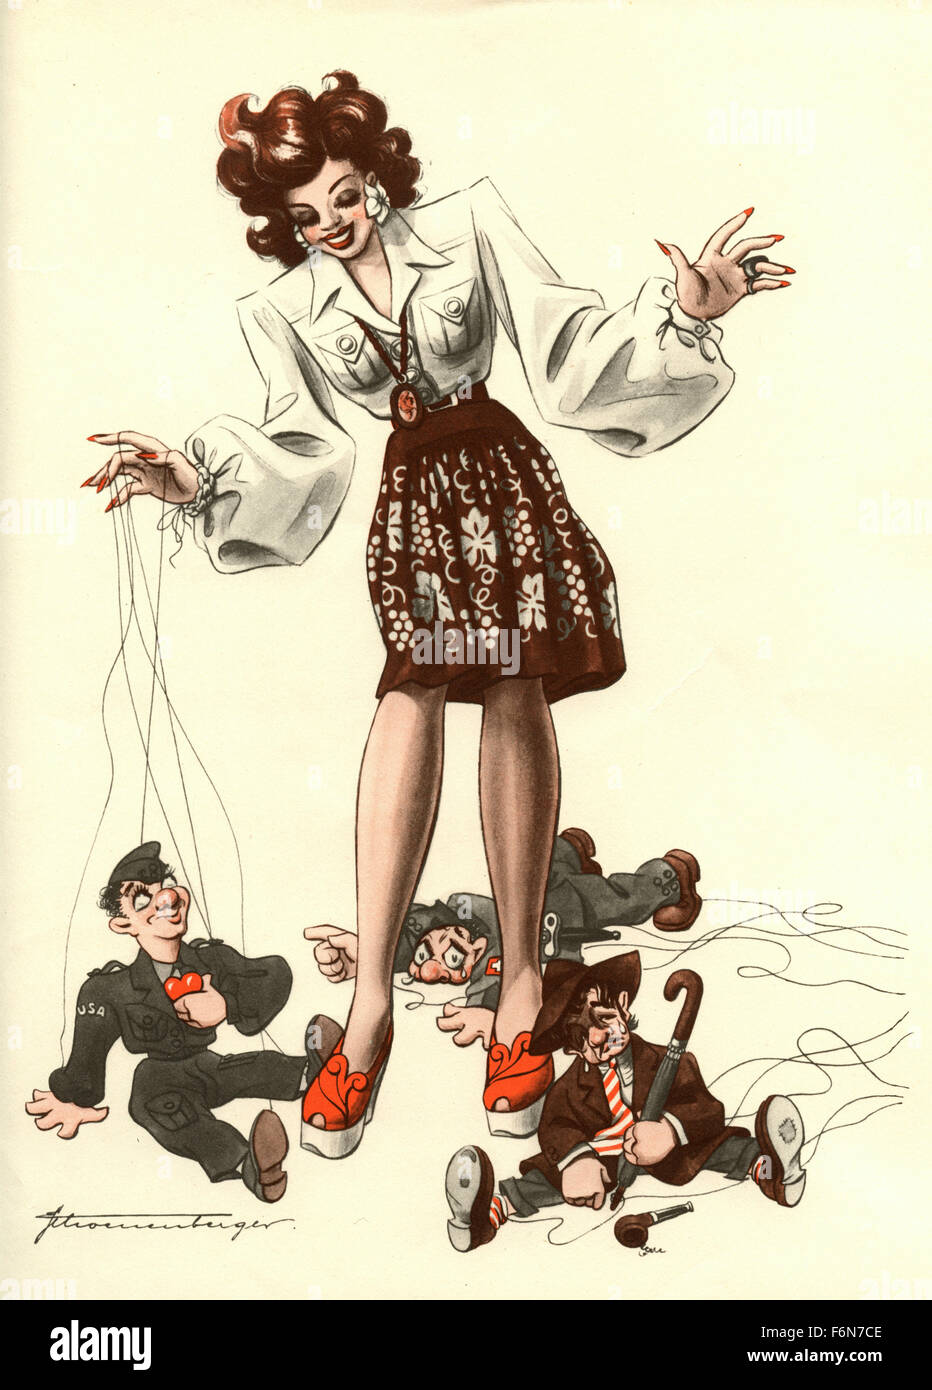 Tedesco illustrazioni satirico 1950: una donna con tre marionette Foto Stock